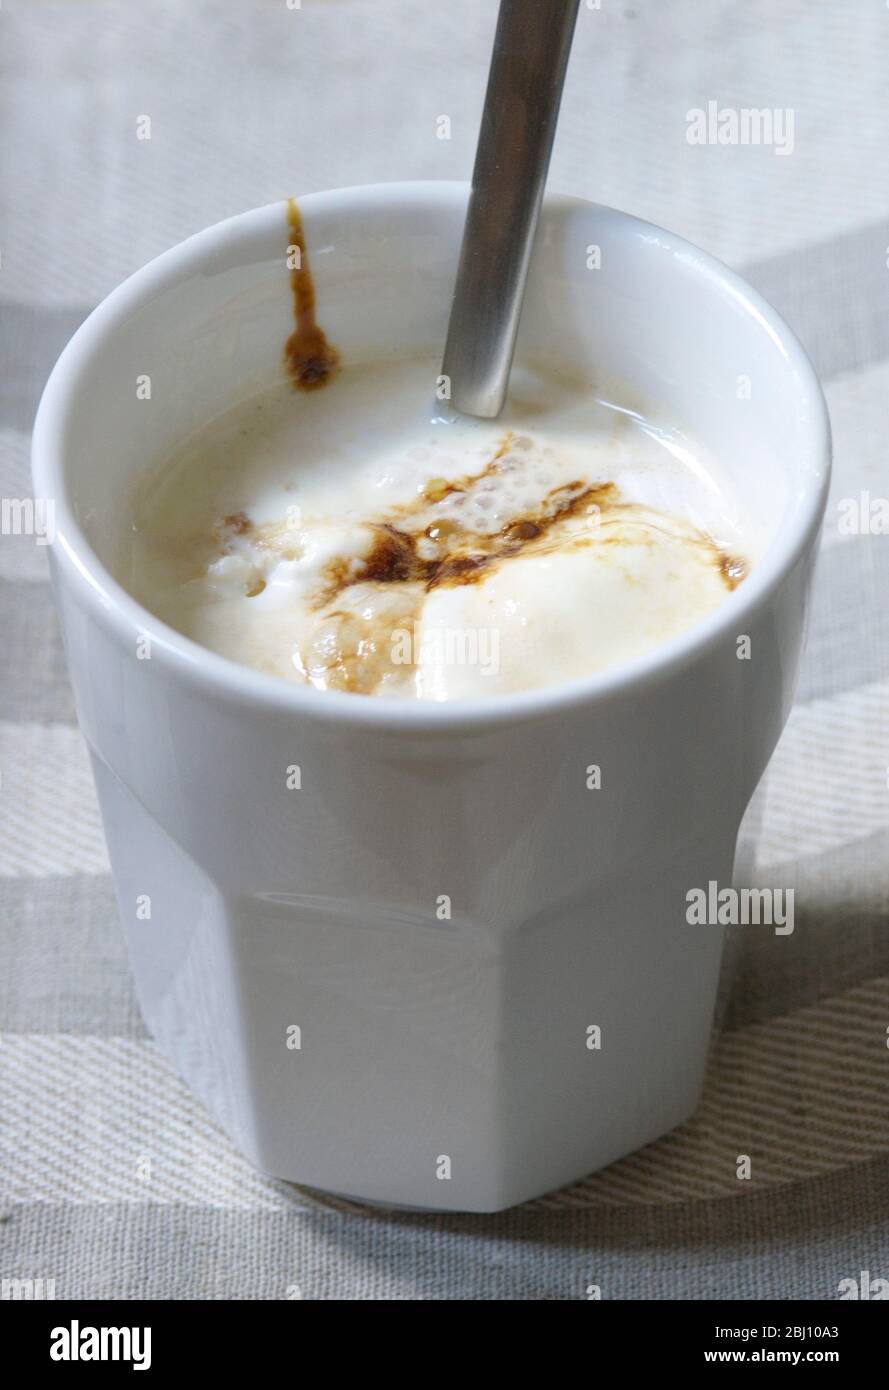 Eistkaffee mit Vanilleeis und Schokoladensirup in weißem Becher auf kariertem Liinen-Tuch - Stockfoto